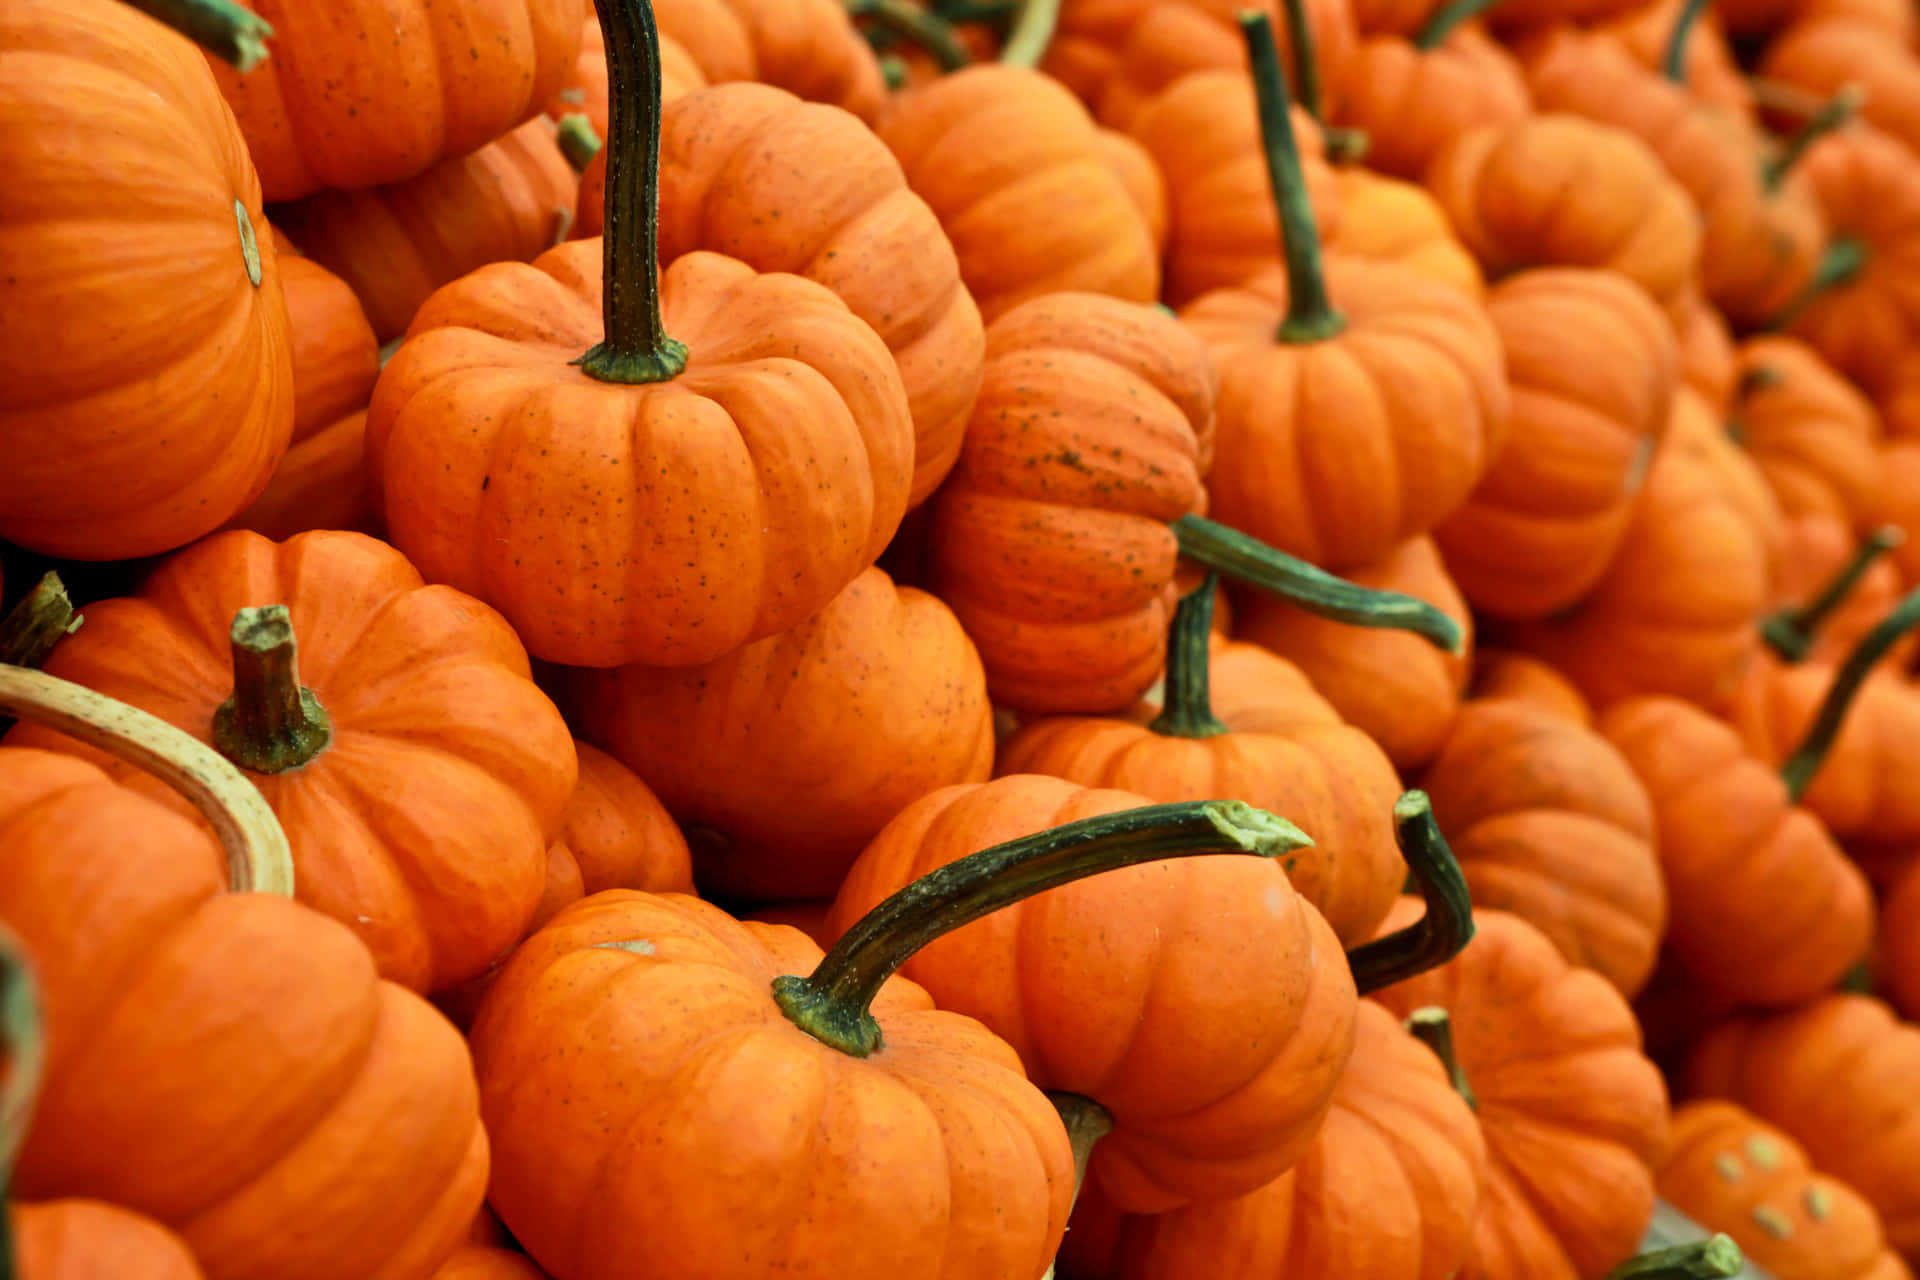 A ripe orange pumpkin in a picturesque autumn setting Wallpaper